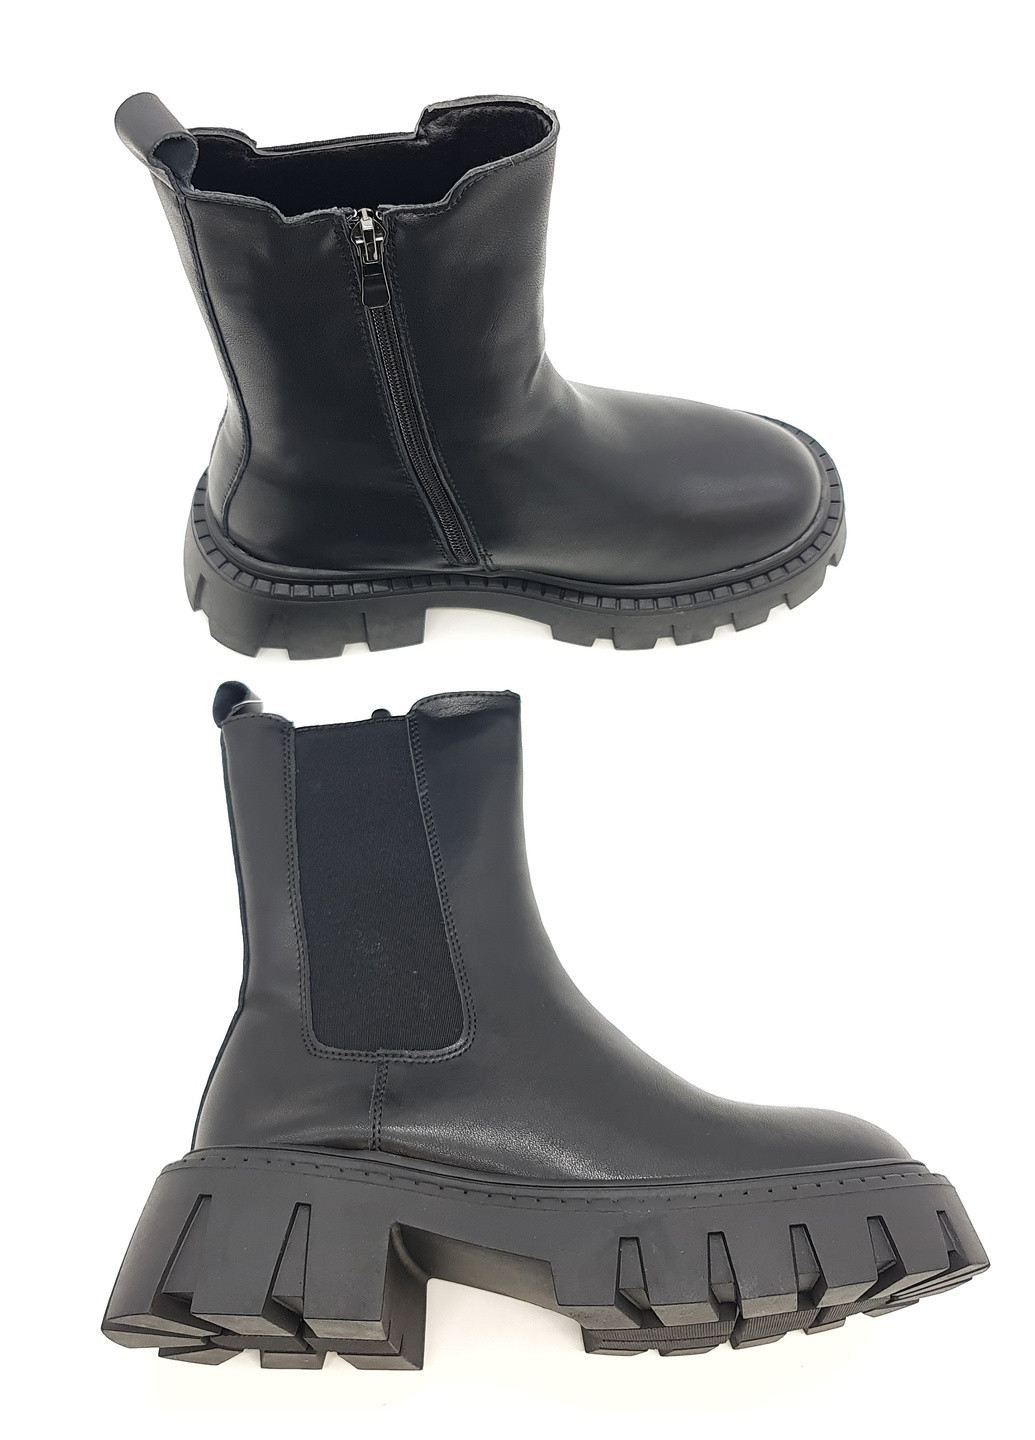 Осенние женские ботинки зимние черные кожаные ii-11-8 23 см(р) It is